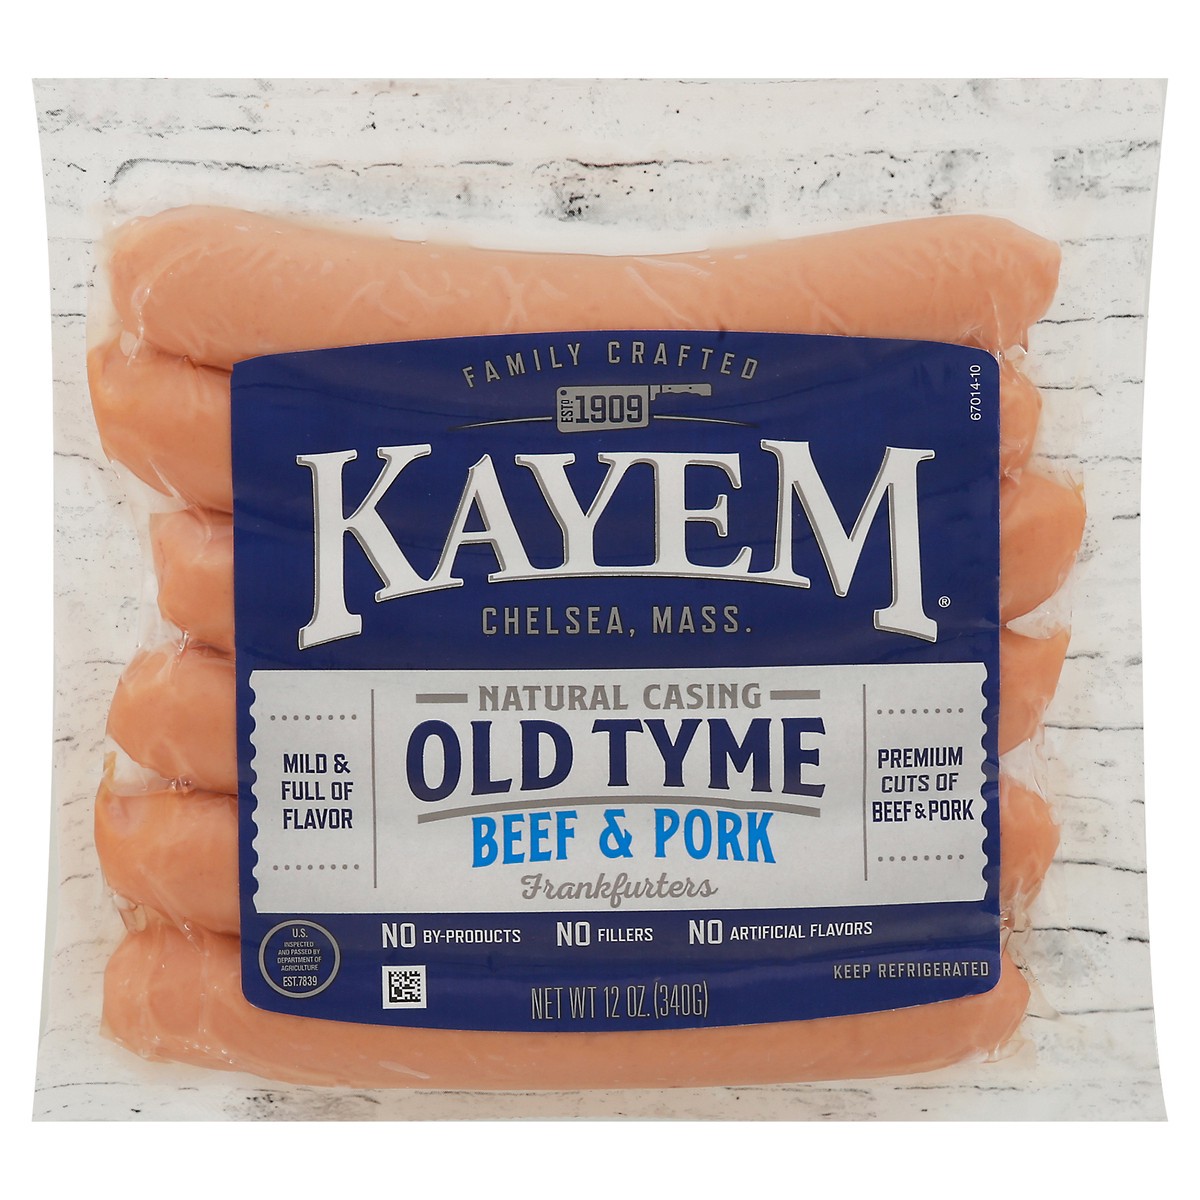 slide 1 of 9, Kayem Old Tyme Natural Casing Beef & Pork Frankfurters 12 oz, 12 oz